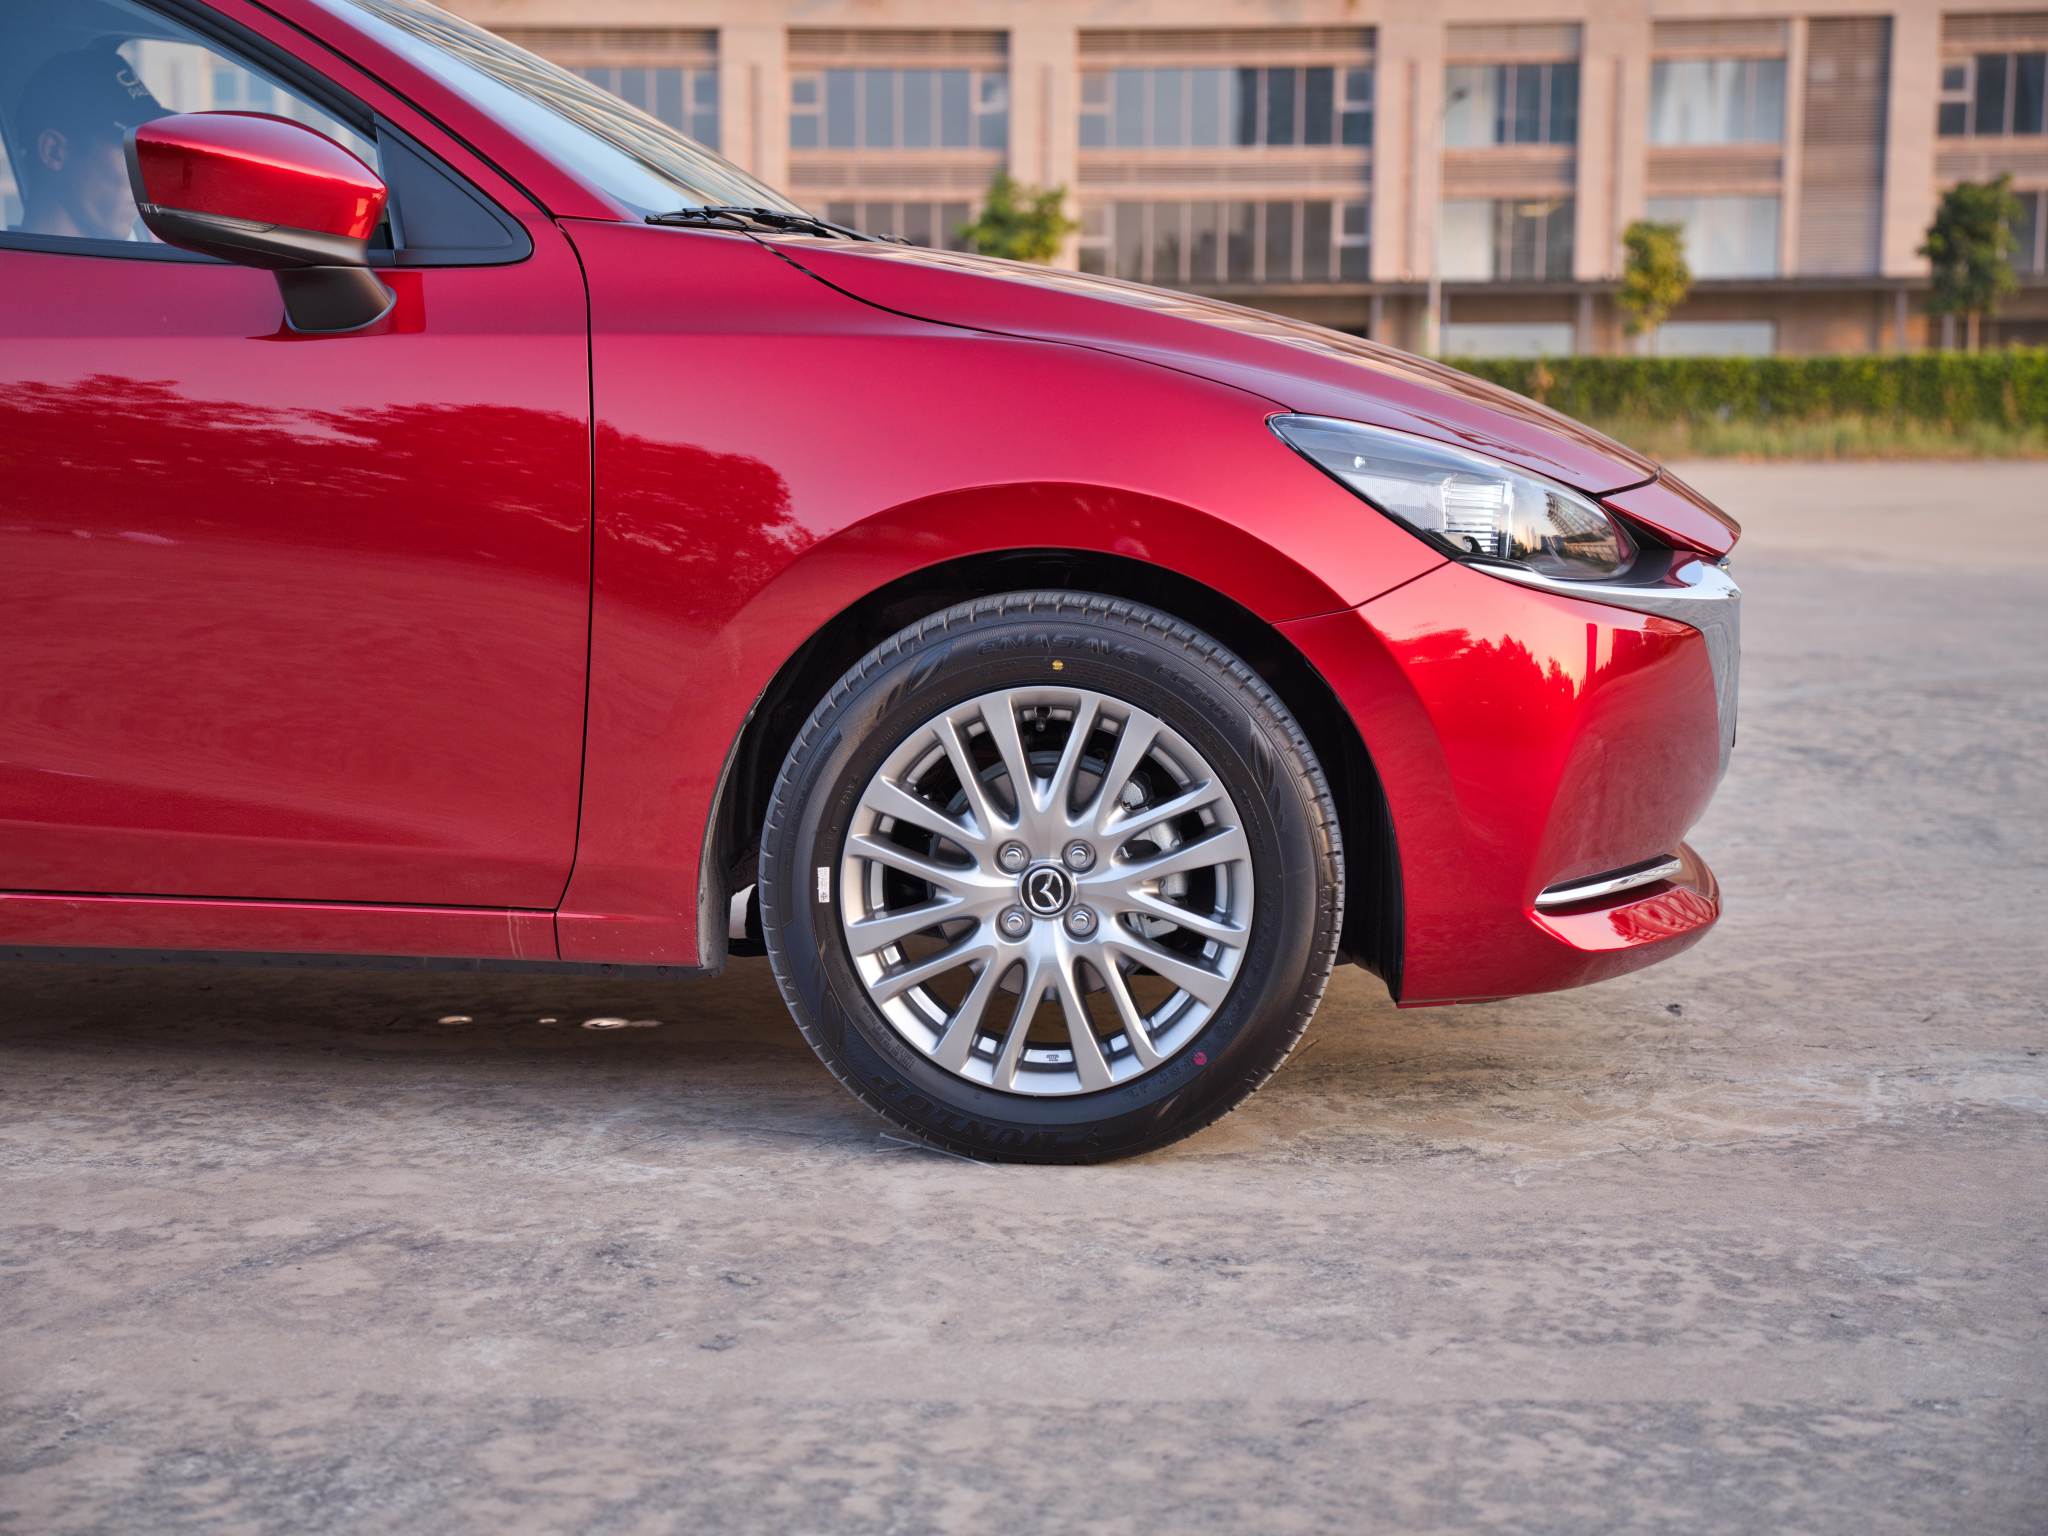 Mazda2 ra mắt, giá bán 629 triệu đồng cho phiên bản cao nhất - 7